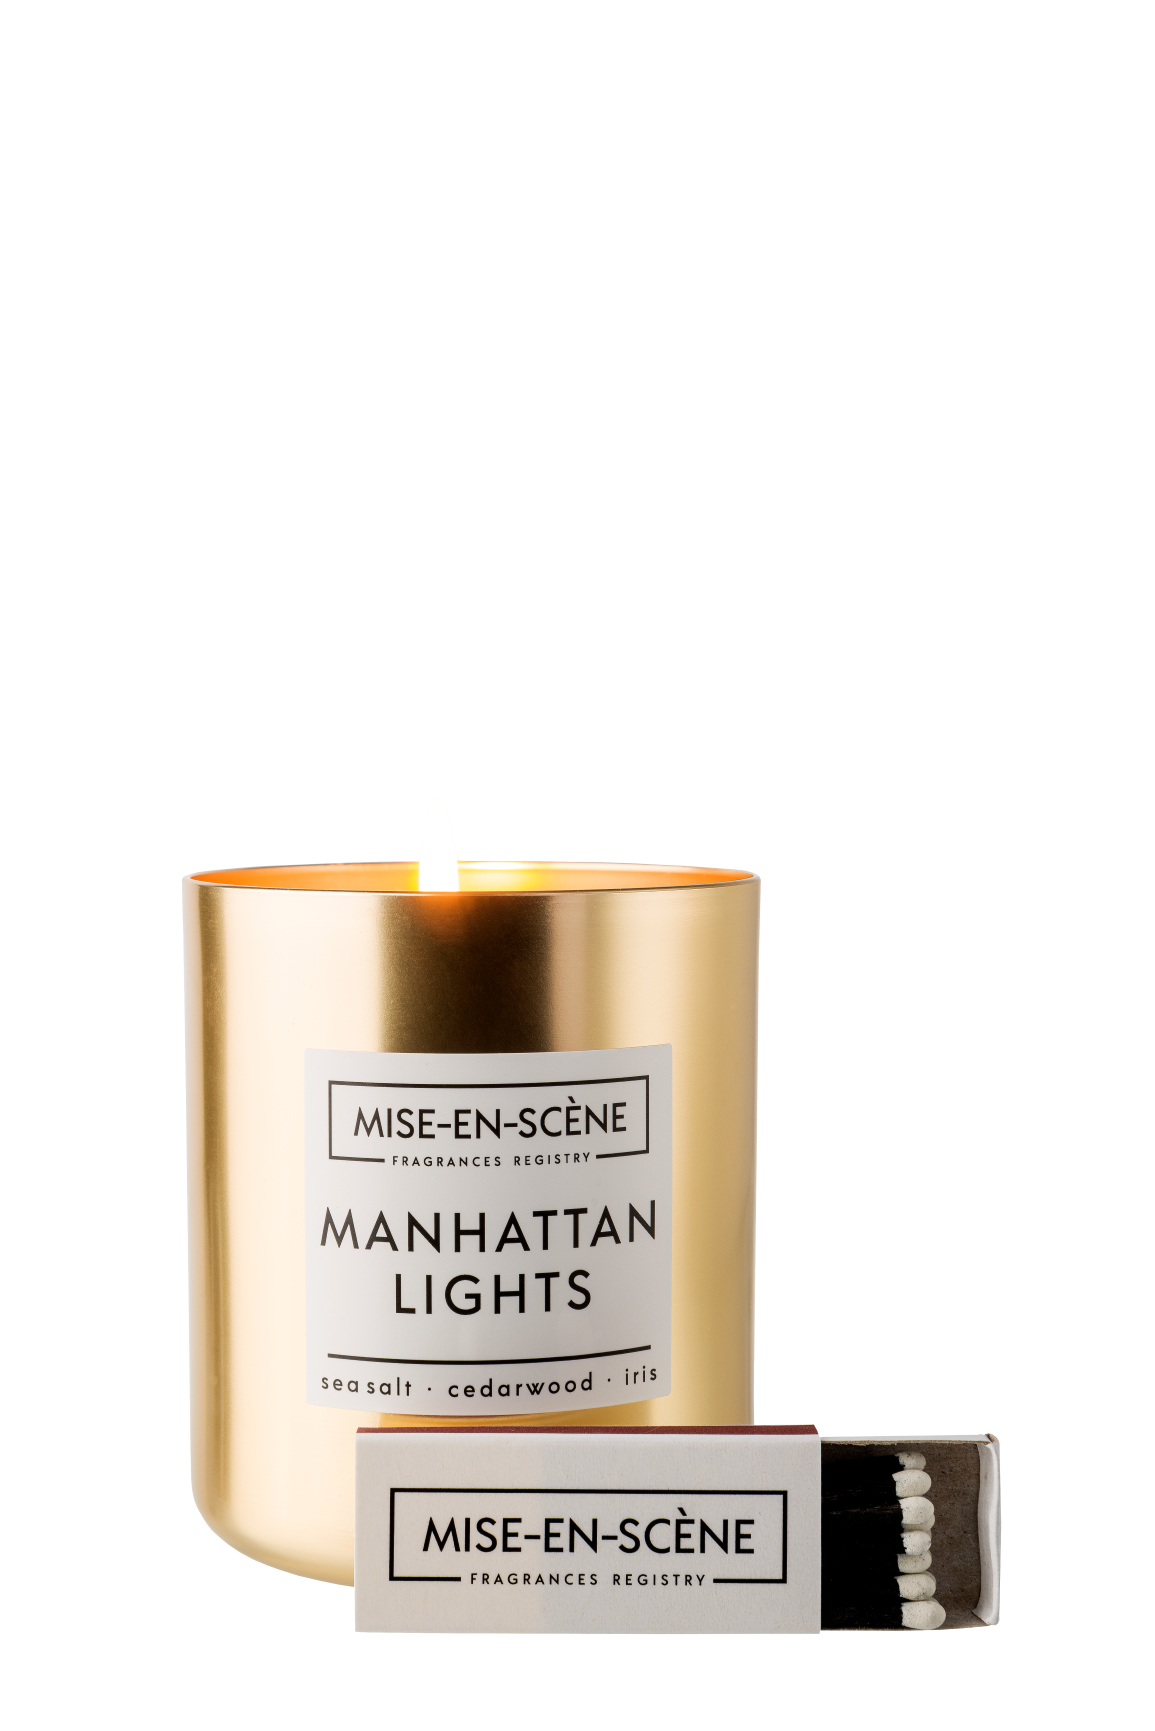 נר בכלי מתכת Mise-En-Scène Manhattan Lights